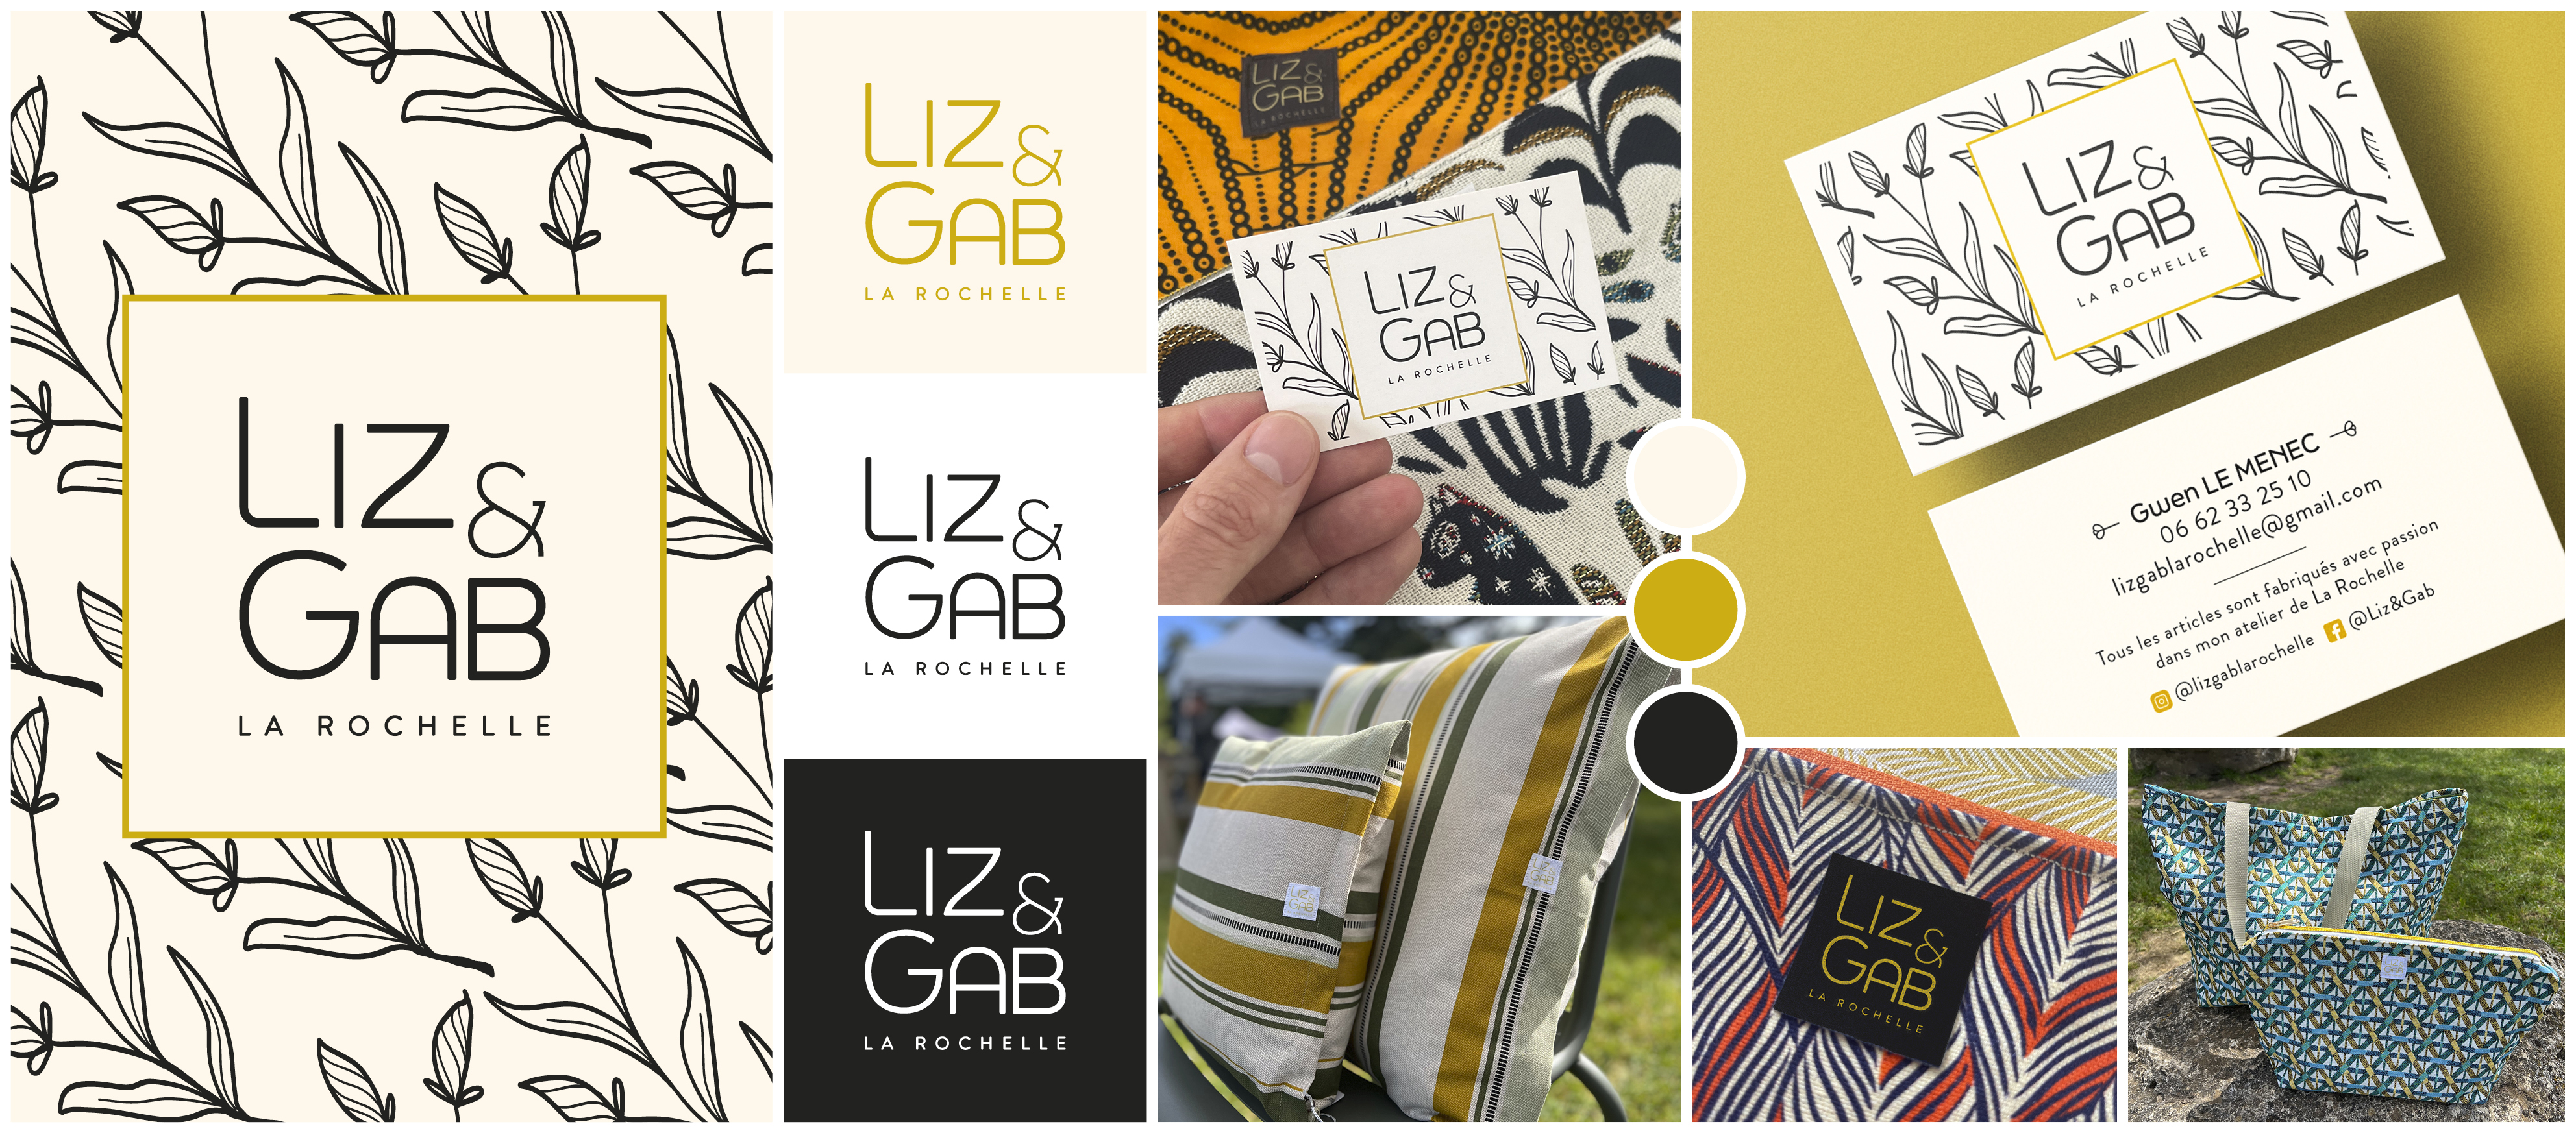 LIZ&GAB, mise en situation du logo de différentes couleurs sur différentes textures